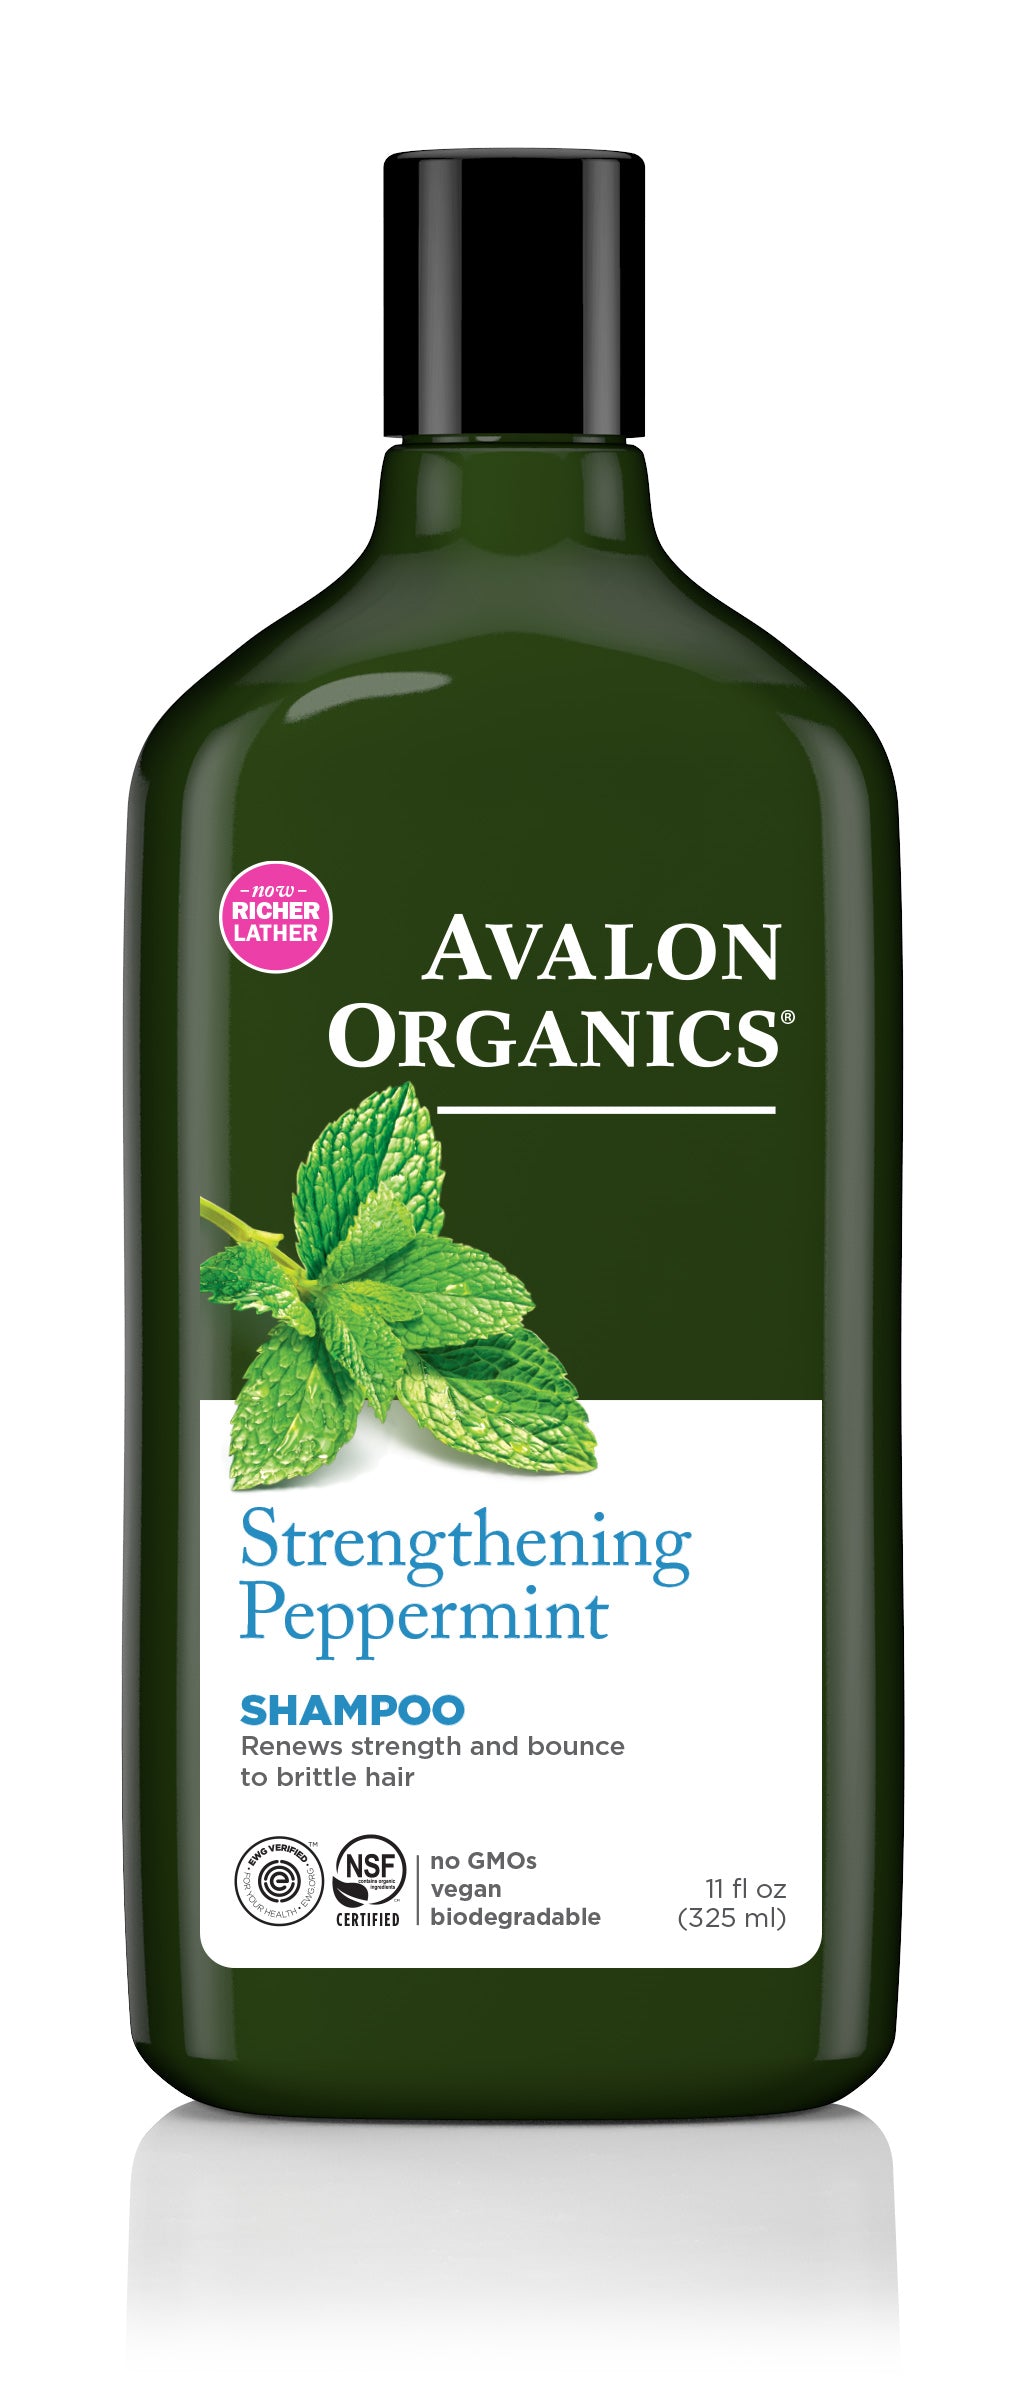 Strengthening Peppermint – Avalon